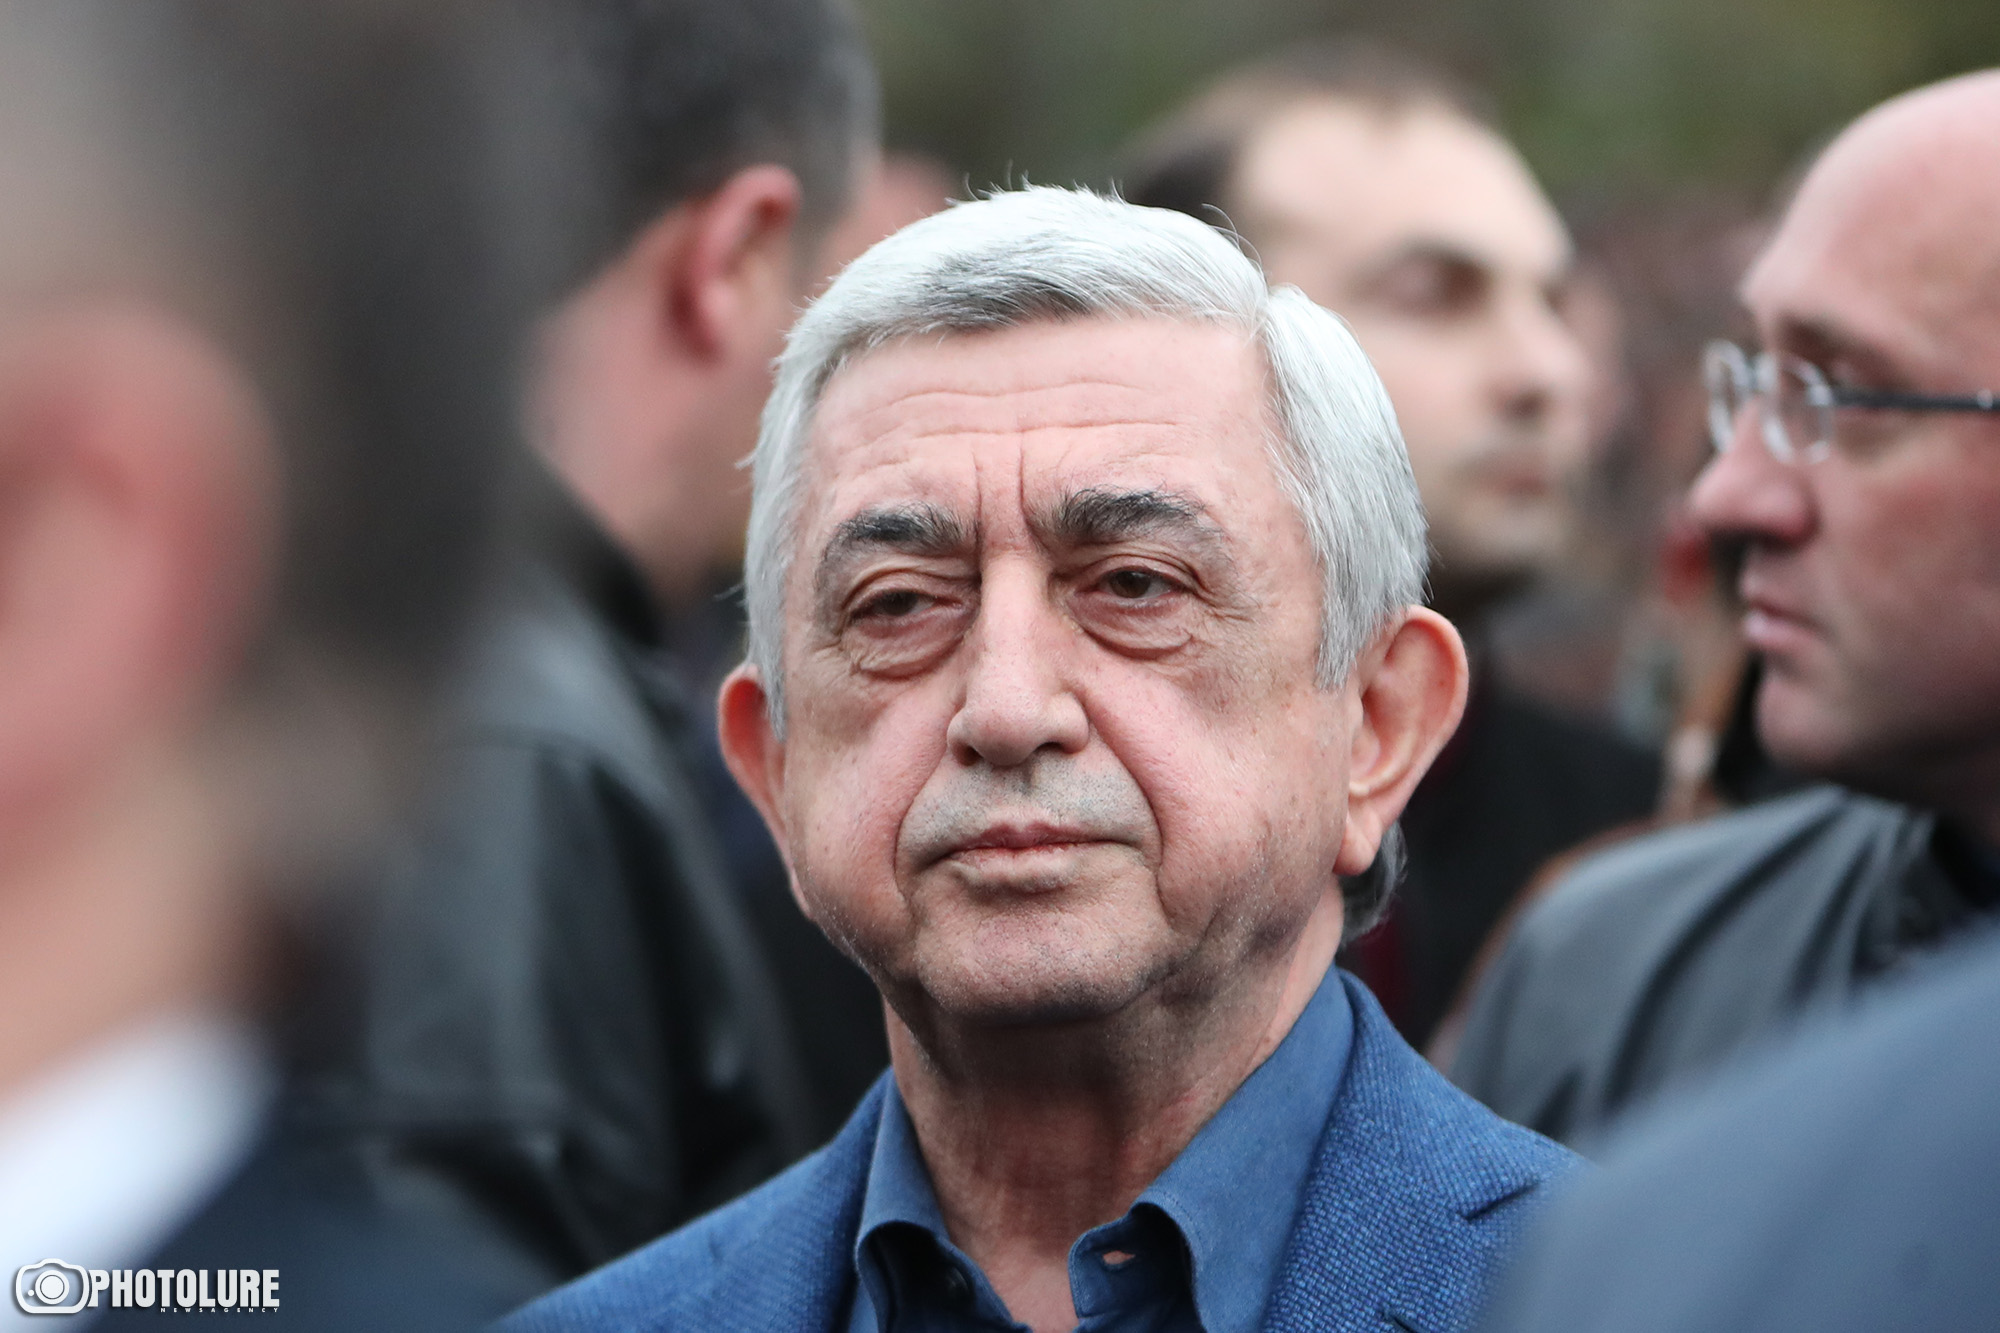 Մամուլ. Սերժ Սարգսյանը կամաց մղվում է առաջին պլան